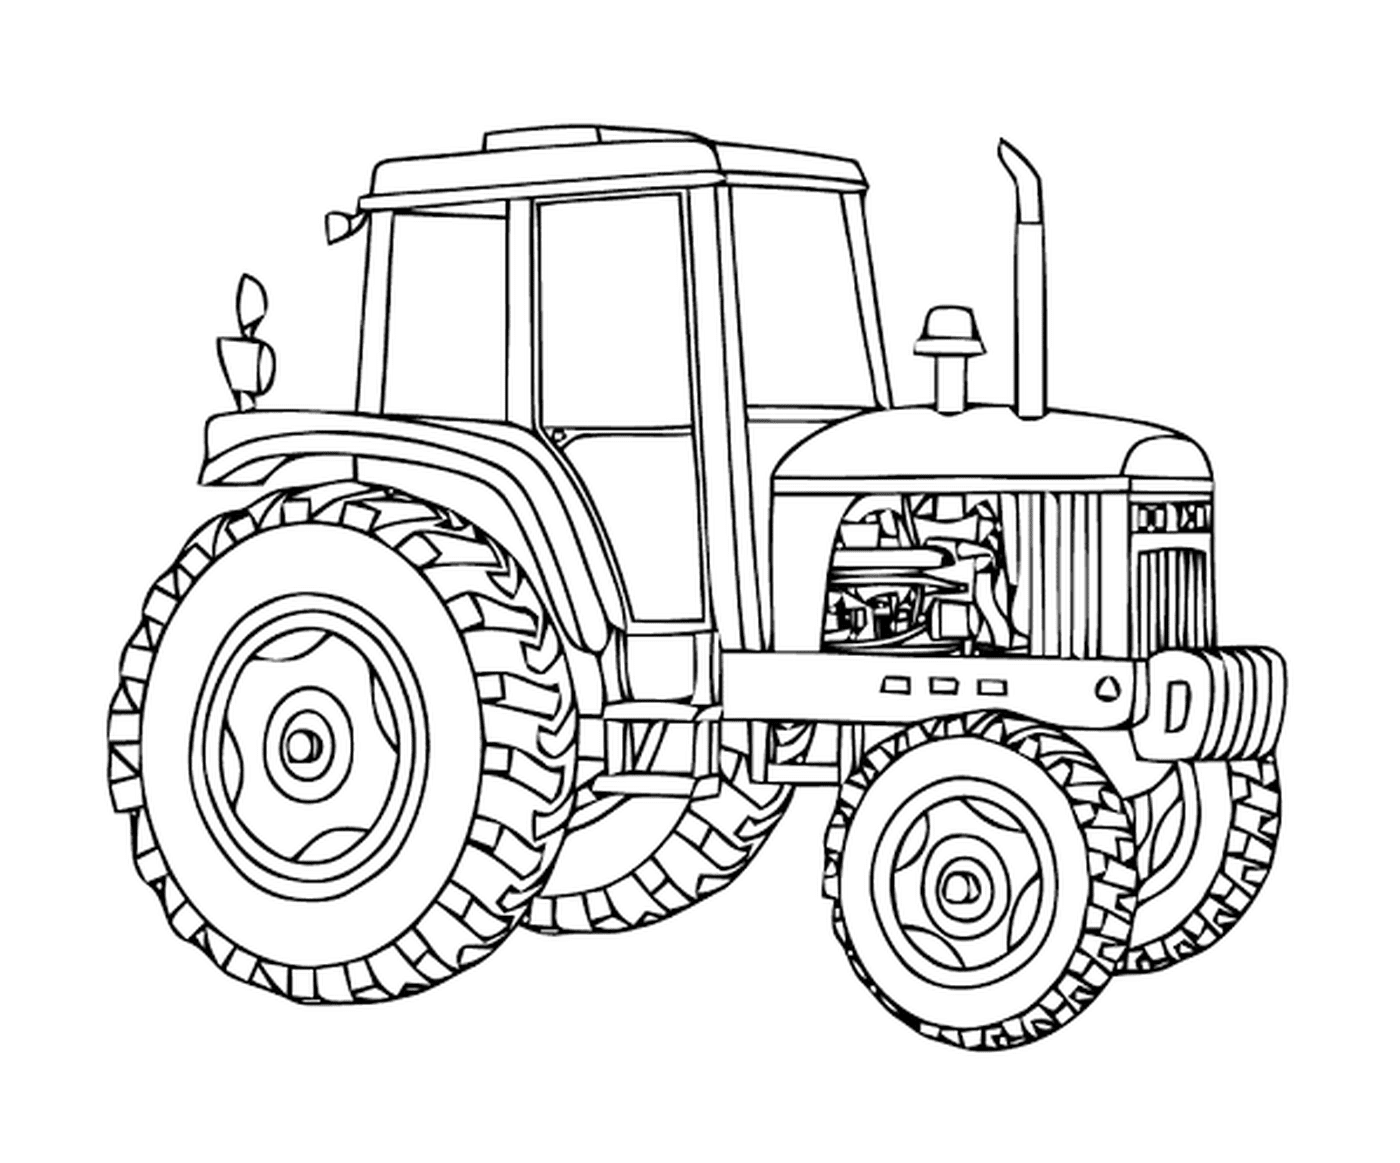   Tracteur Massey Ferguson, puissant véhicule agricole 